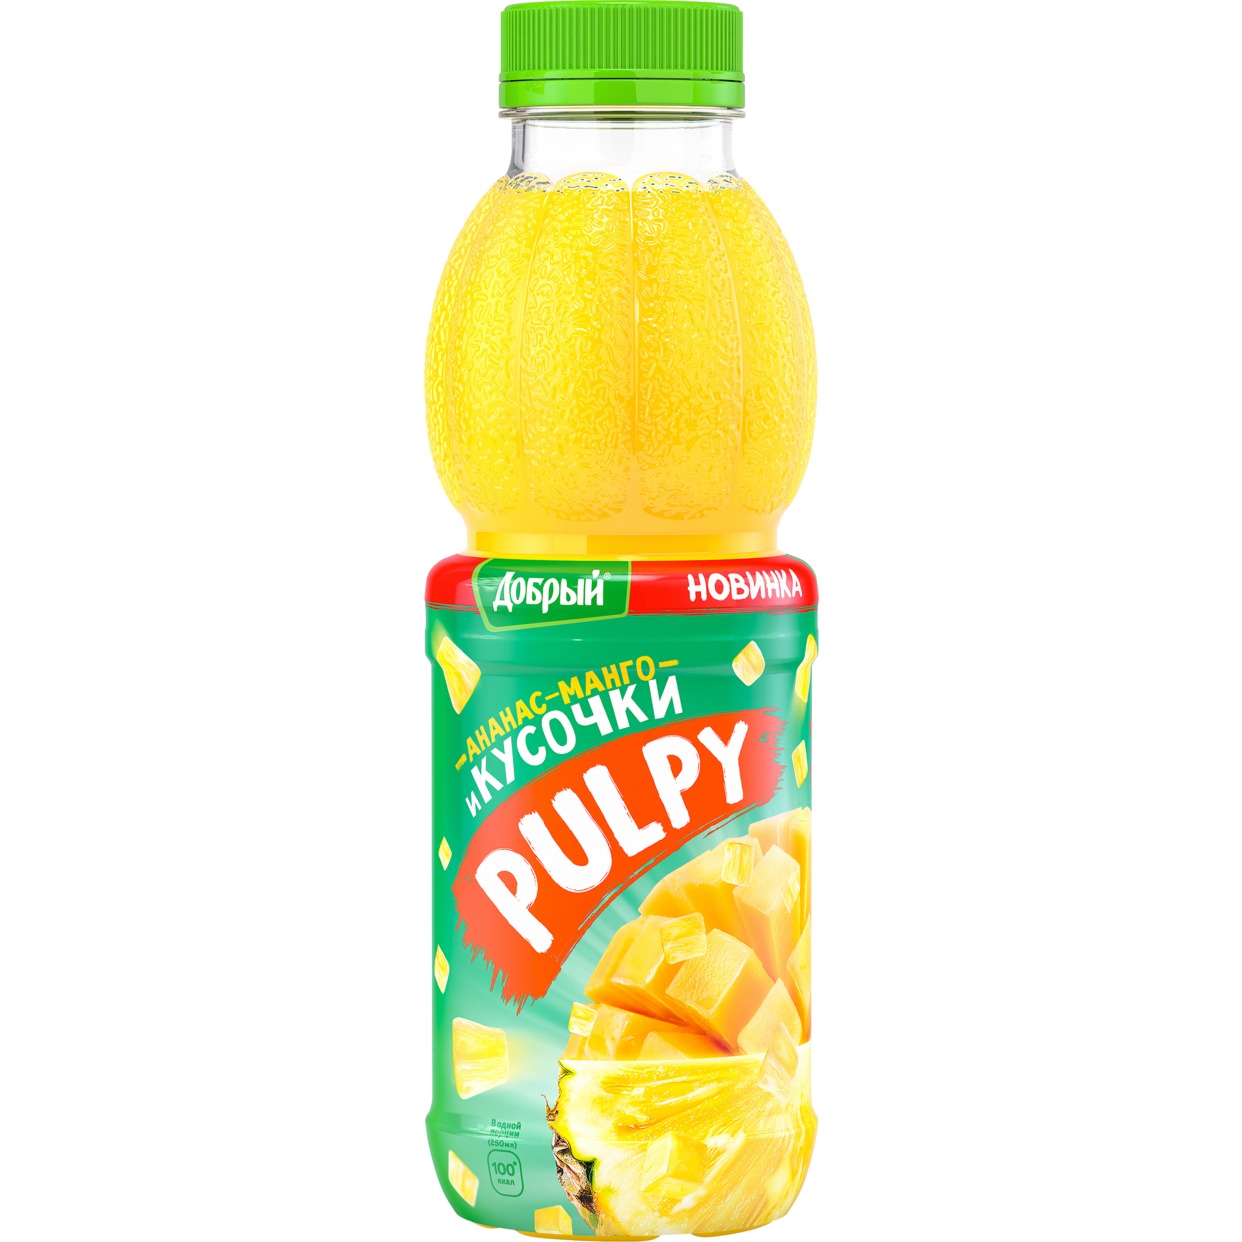 Напиток сокосодержащий Добрый Pulpy, ананс-манго, 450 мл по акции в Пятерочке